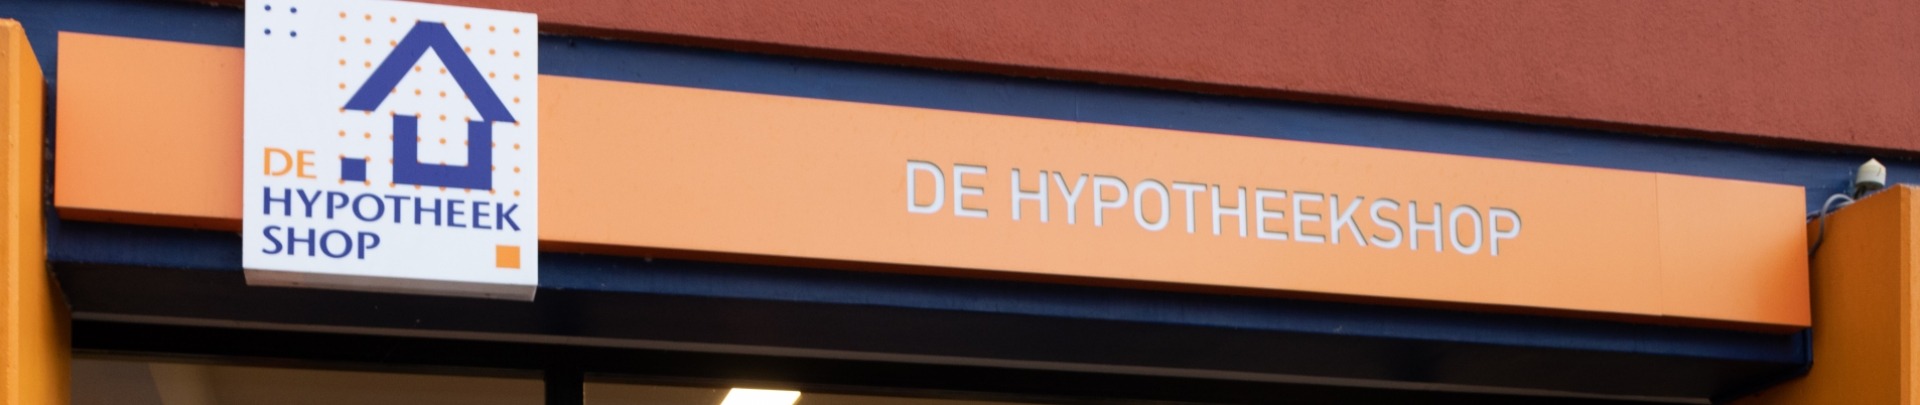 Hypotheekshop Enschede